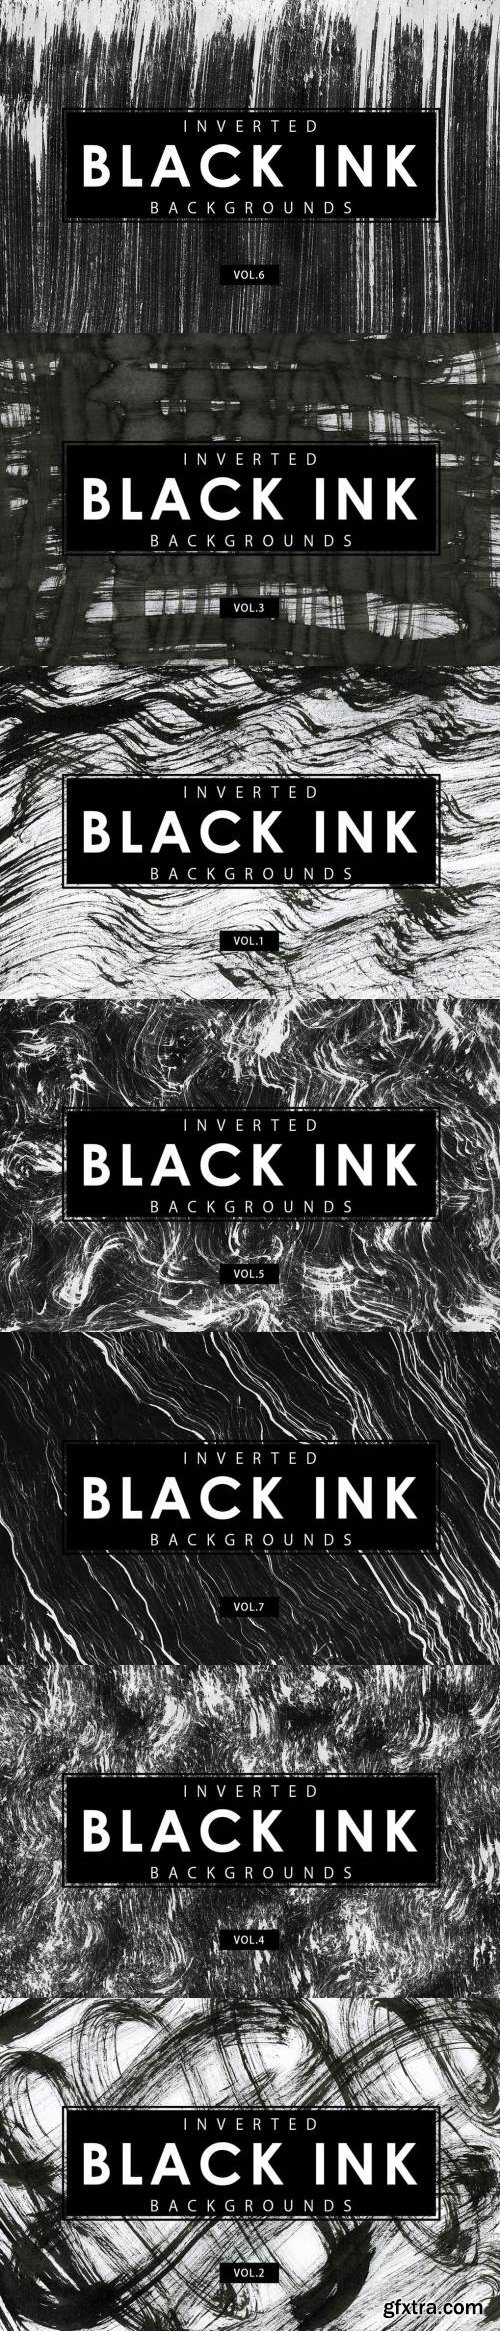 Inverted Black Ink Backgrounds Bundle